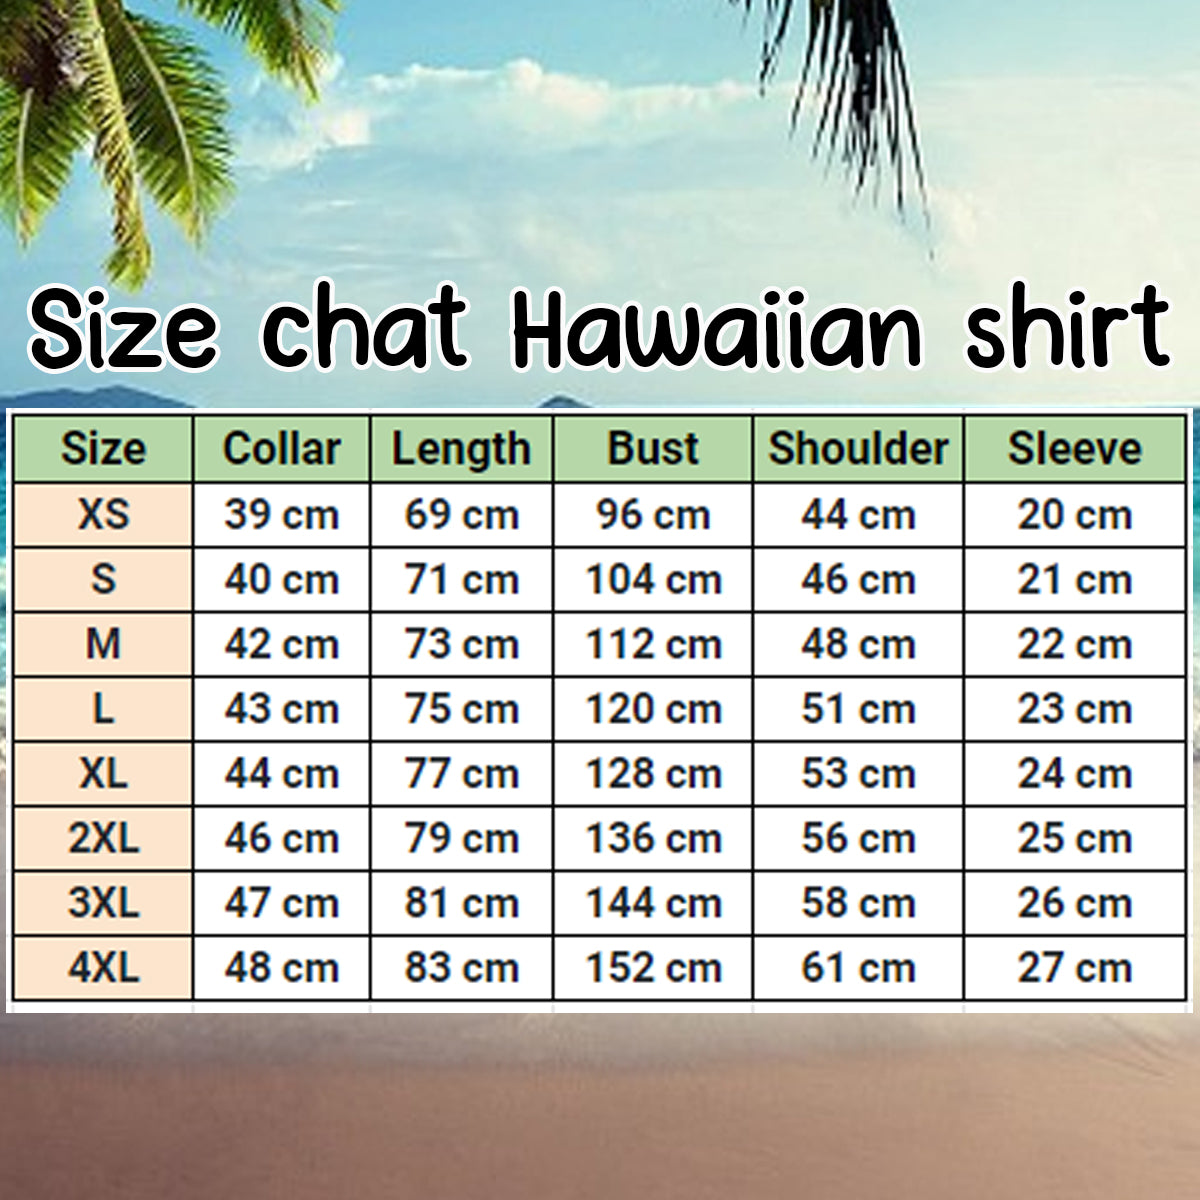 German Pinscher Hawaiian Shirt/ Flower dog Short Sleeve Hawaiian Aloha Shirt/ hawaiian shirt for men/ women